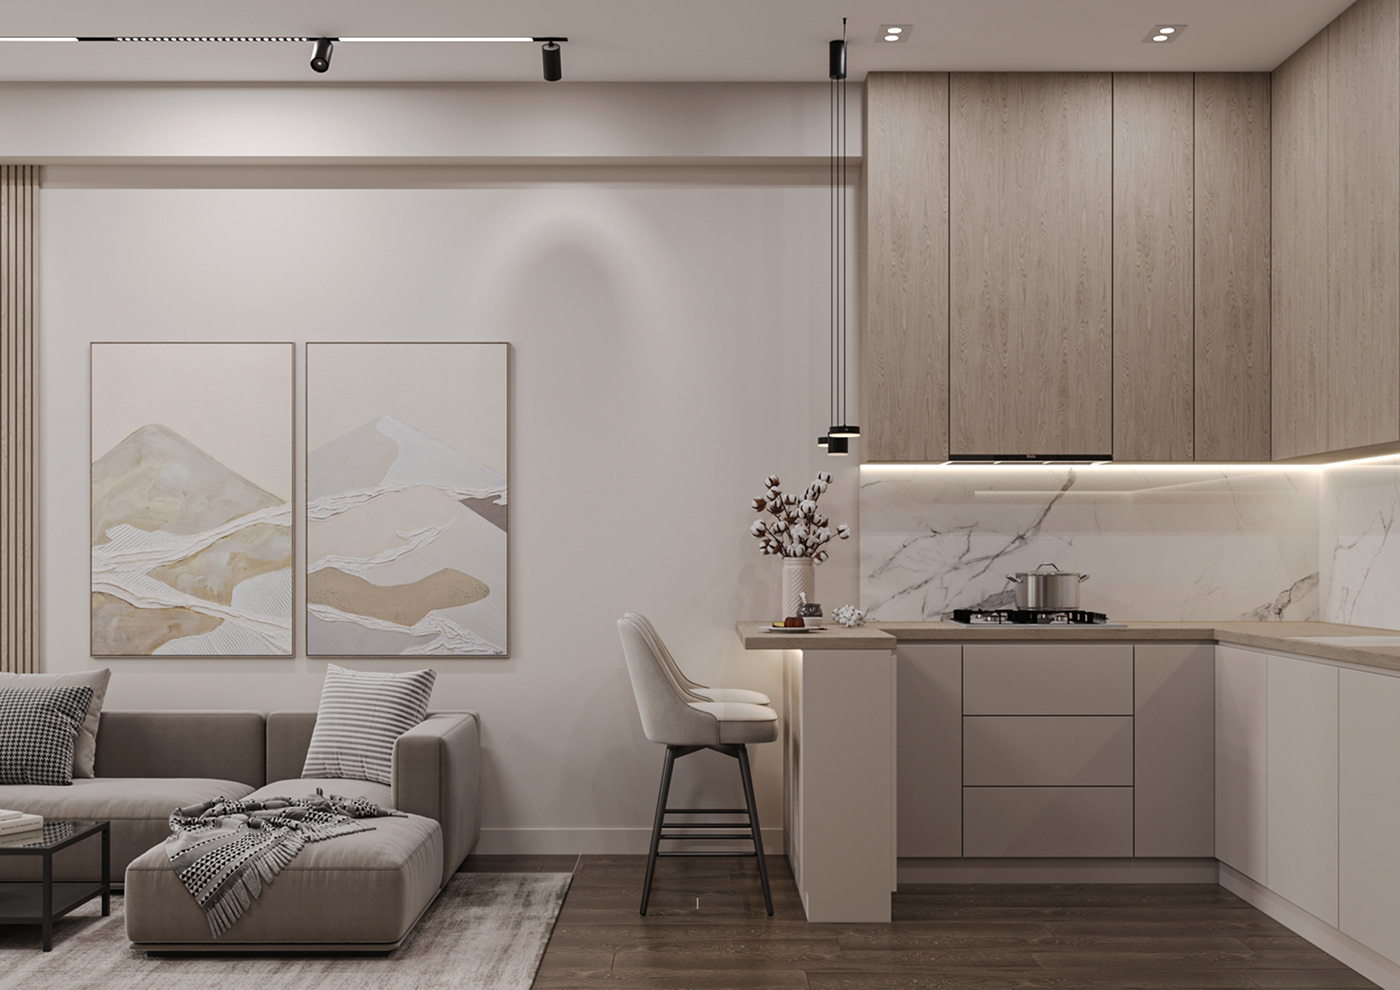 interior design  modern wood furniture visualization living room kitchen bedroom bathroom